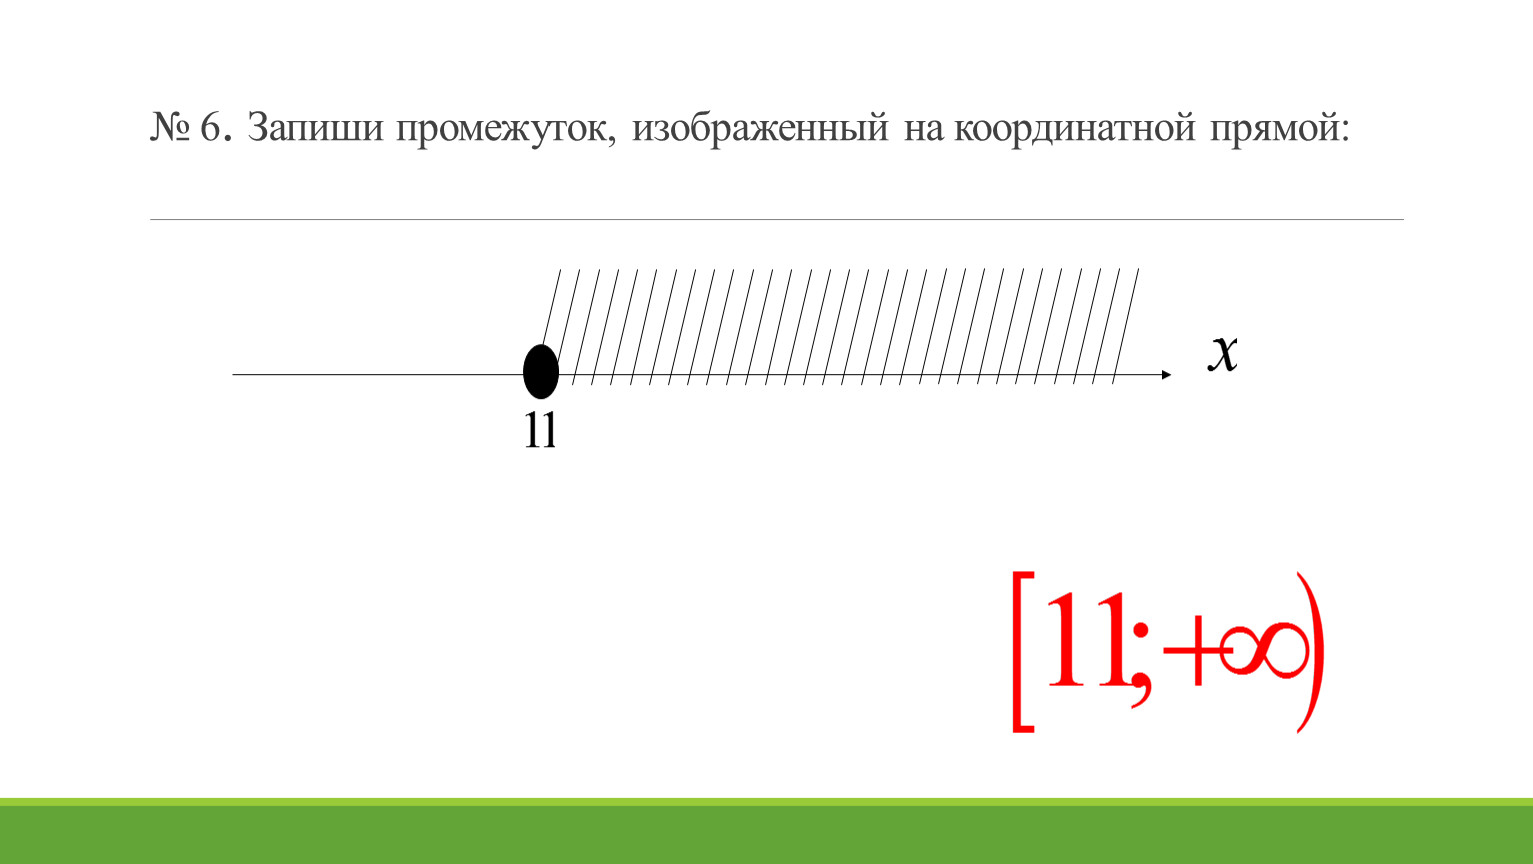 Изобразите на координатной прямой промежуток 9 7. Запишите промежуток изображенный на координатной прямой. Изобразите на координатной прямой промежуток. Изобразите на координатной прямой промежуток -3 2. Изобразите на координатной прямой промежуток -2 <x<9.